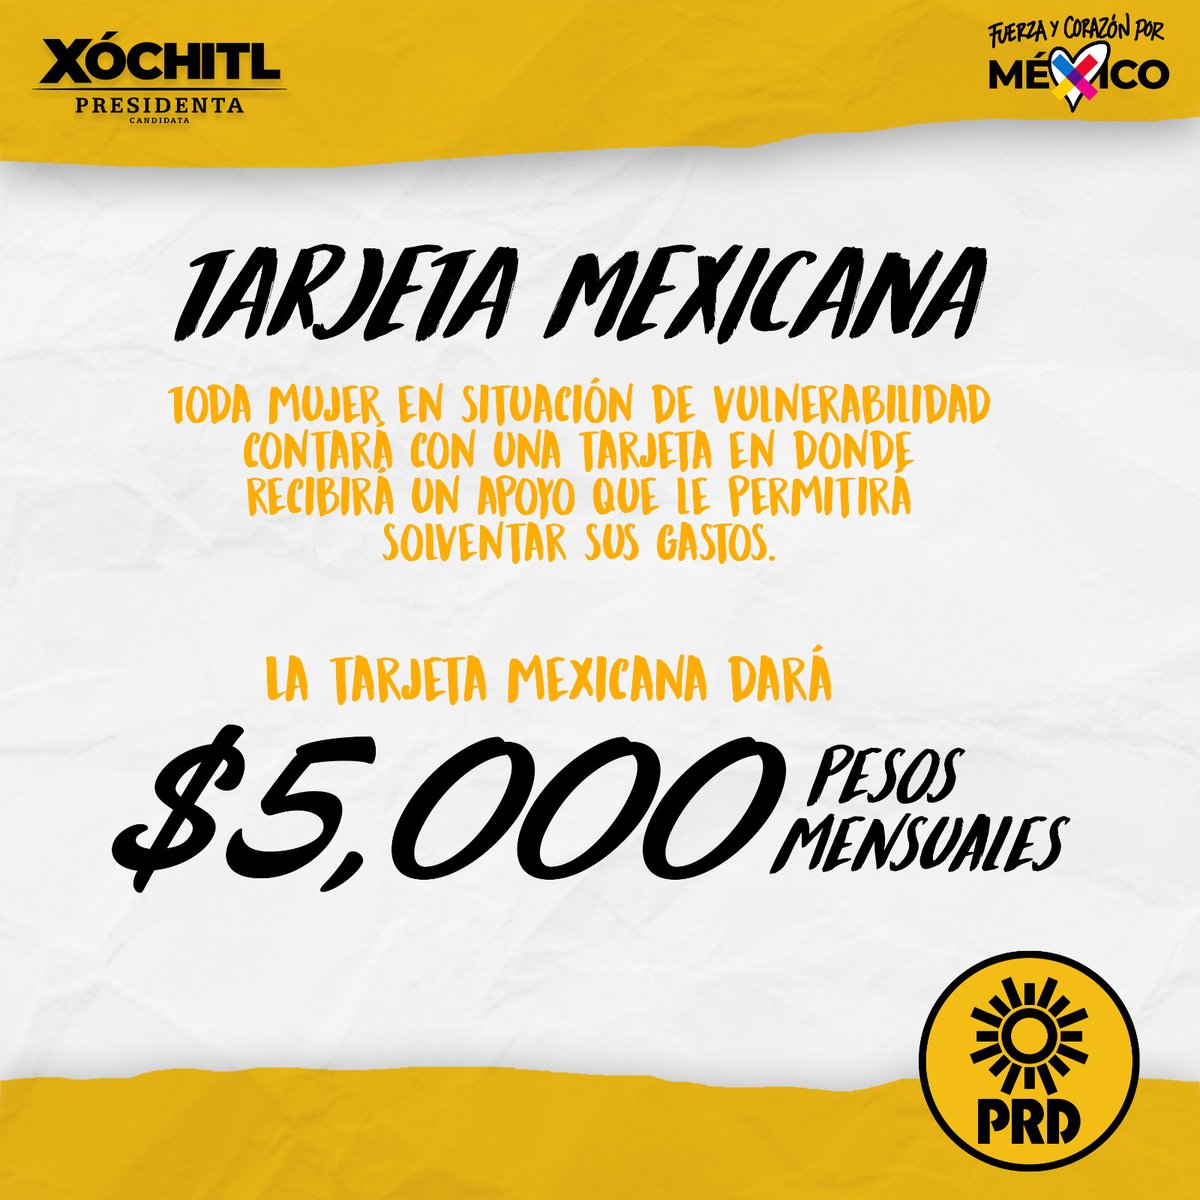 Las mujeres en México merecen libertad total. Una de tantas es la libertad económica, la cual será más accesible con la 'Tarjeta Mexicana' de @XochitlGalvez y el #PRD. ¡Aquí te apoyaremos con todo!